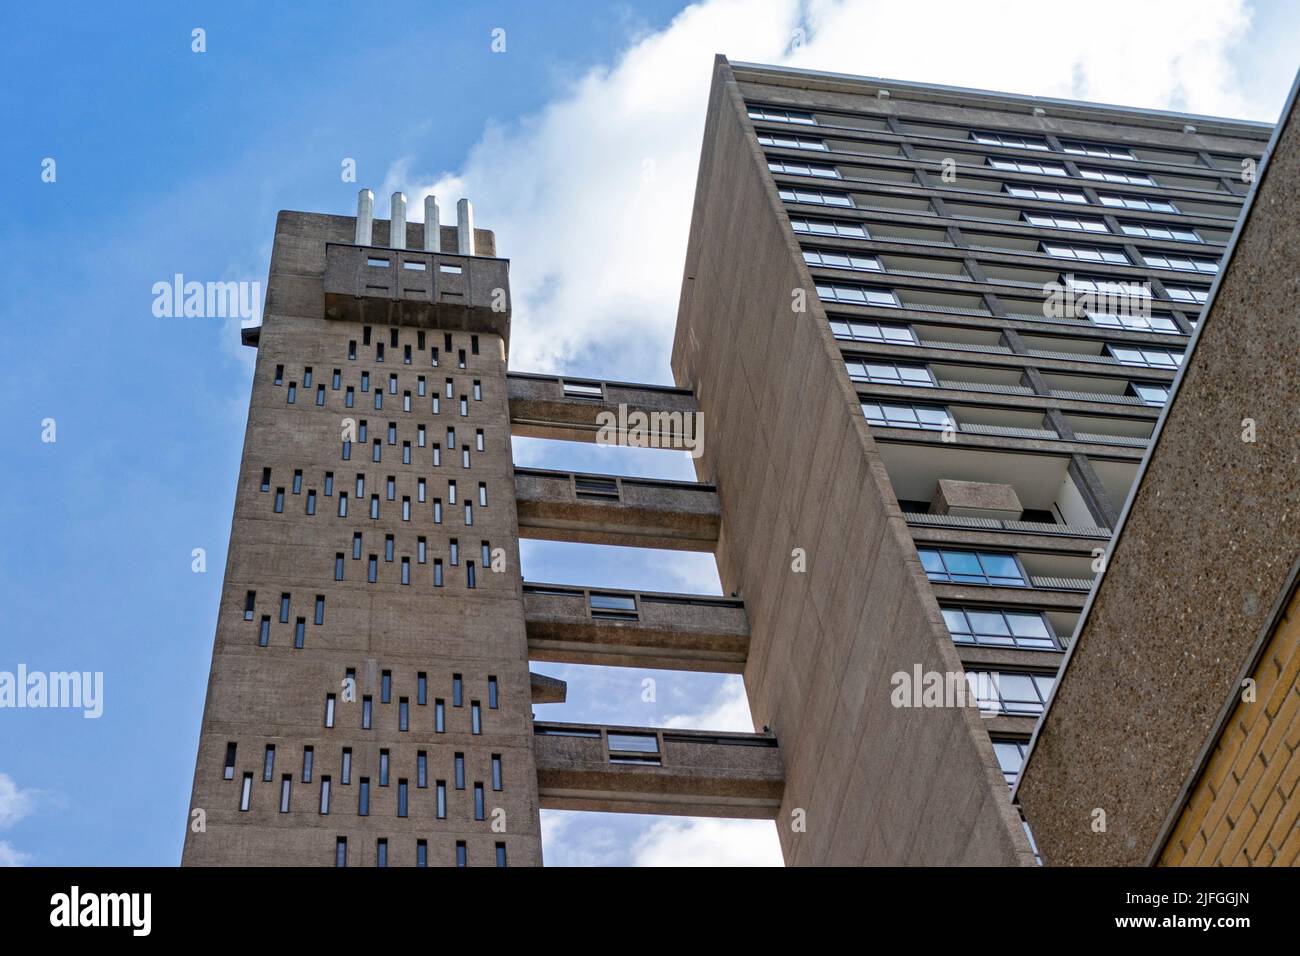 Balfron Tower, bloque de torre de gran altura de Brutalist por el arquitecto Erno Goldfinger, situado en Poplar, Tower Hamlets, East London, REINO UNIDO. Foto de stock